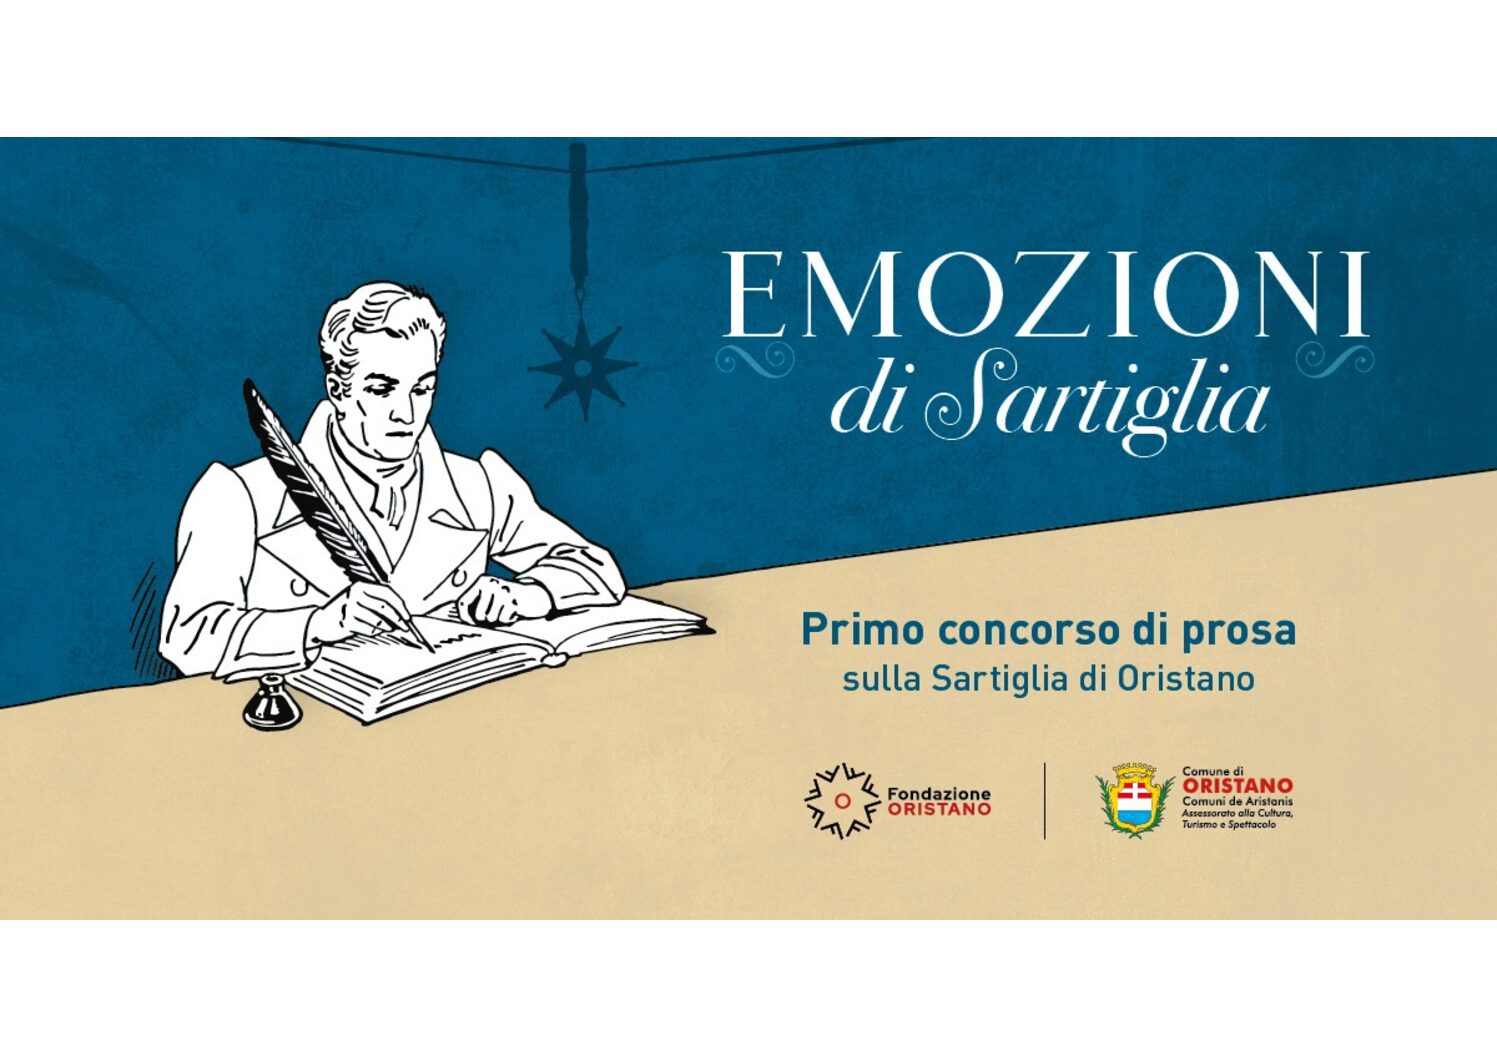 Emozioni di Sartiglia: Filomena Urru vince il concorso